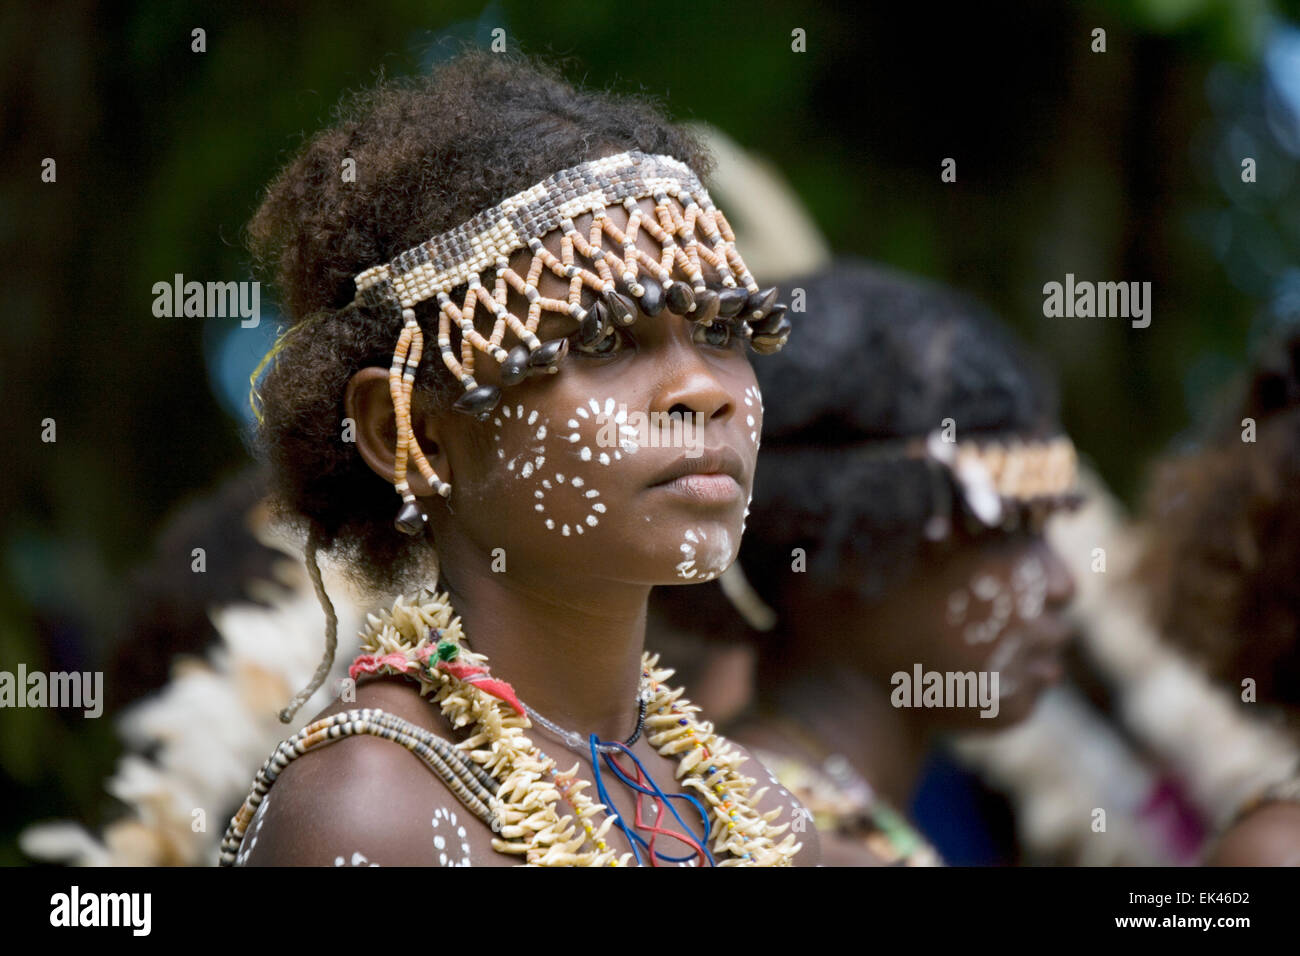 Garder leur culture vivante, les jeunes de l'île de Nggela ont enfilé des costumes traditionnels et parée d'eux-mêmes avec des coquilles. Banque D'Images